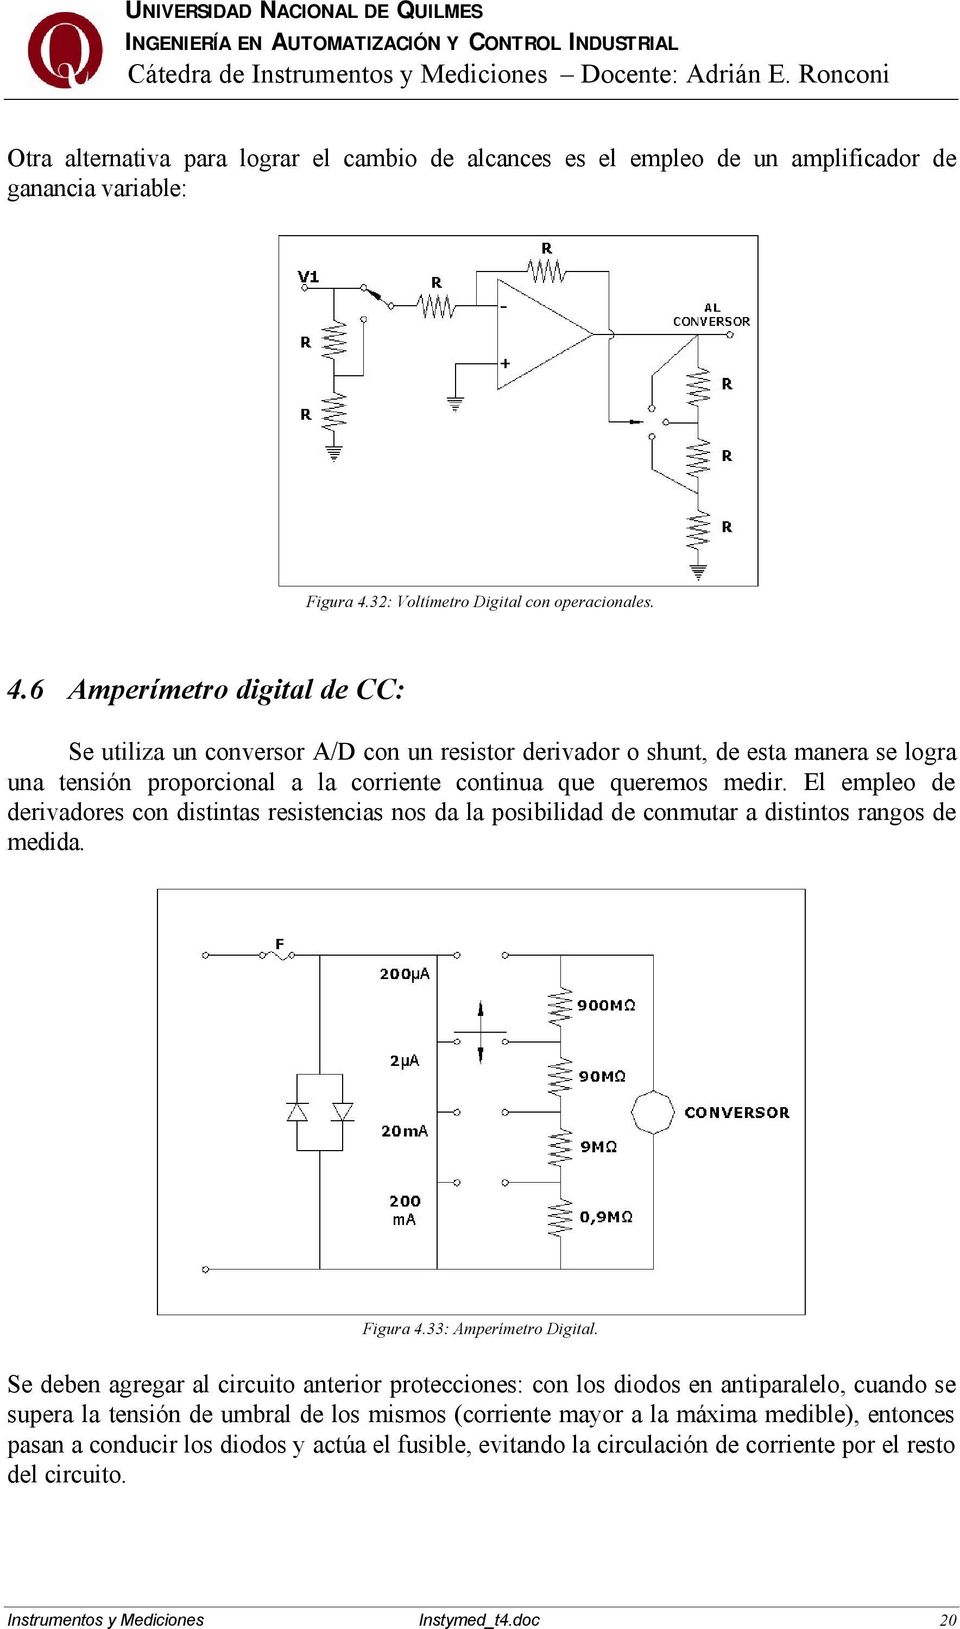 6 Amperímetro digital de CC: Se utiliza un conversor A/D con un resistor derivador o shunt, de esta manera se logra una tensión proporcional a la corriente continua que queremos medir.